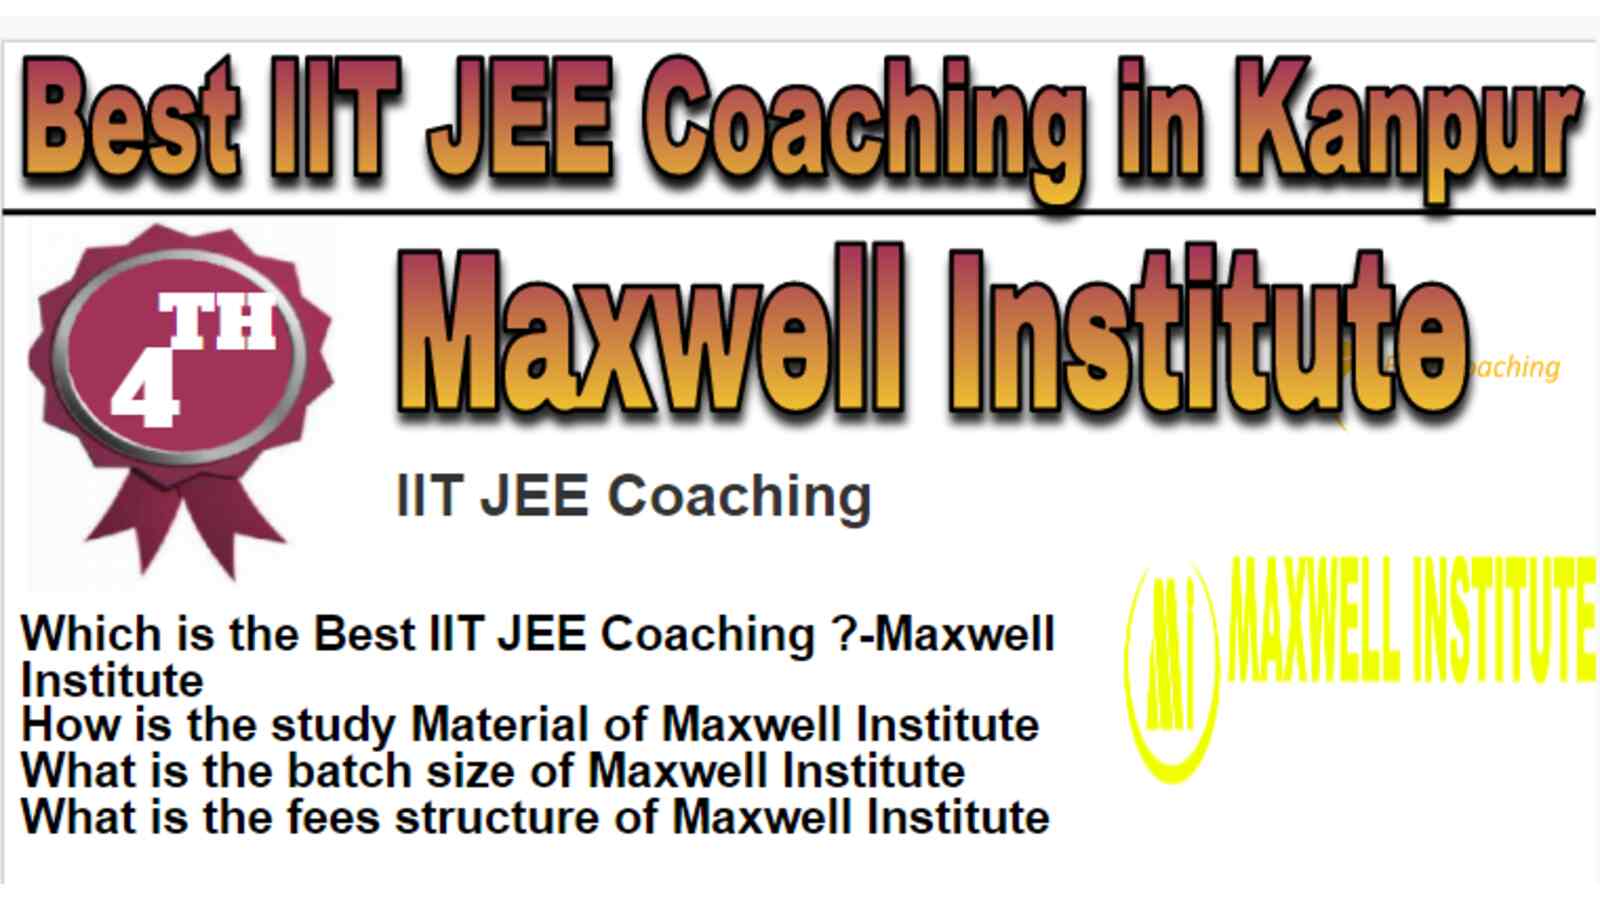 Rank 4 Best IIT JEE Coaching in Kanpur